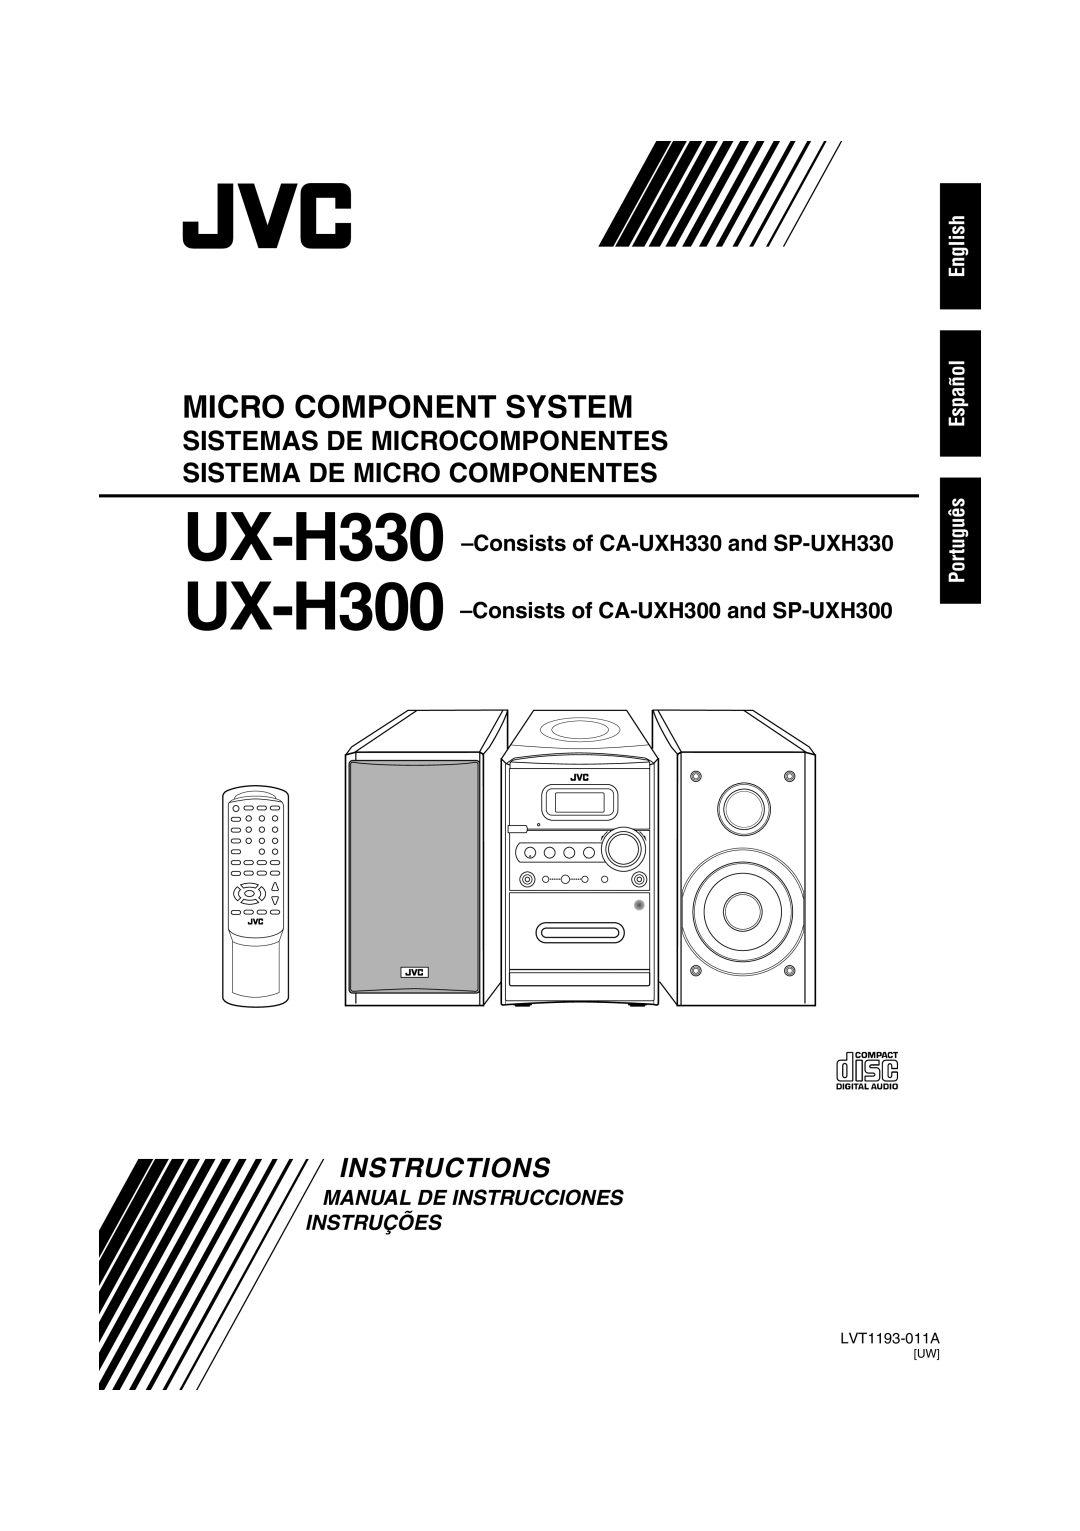 JVC UX-H300 Micro Component System, Sistemas De Microcomponentes, Sistema De Micro Componentes, Instructions, LVT1193-011A 